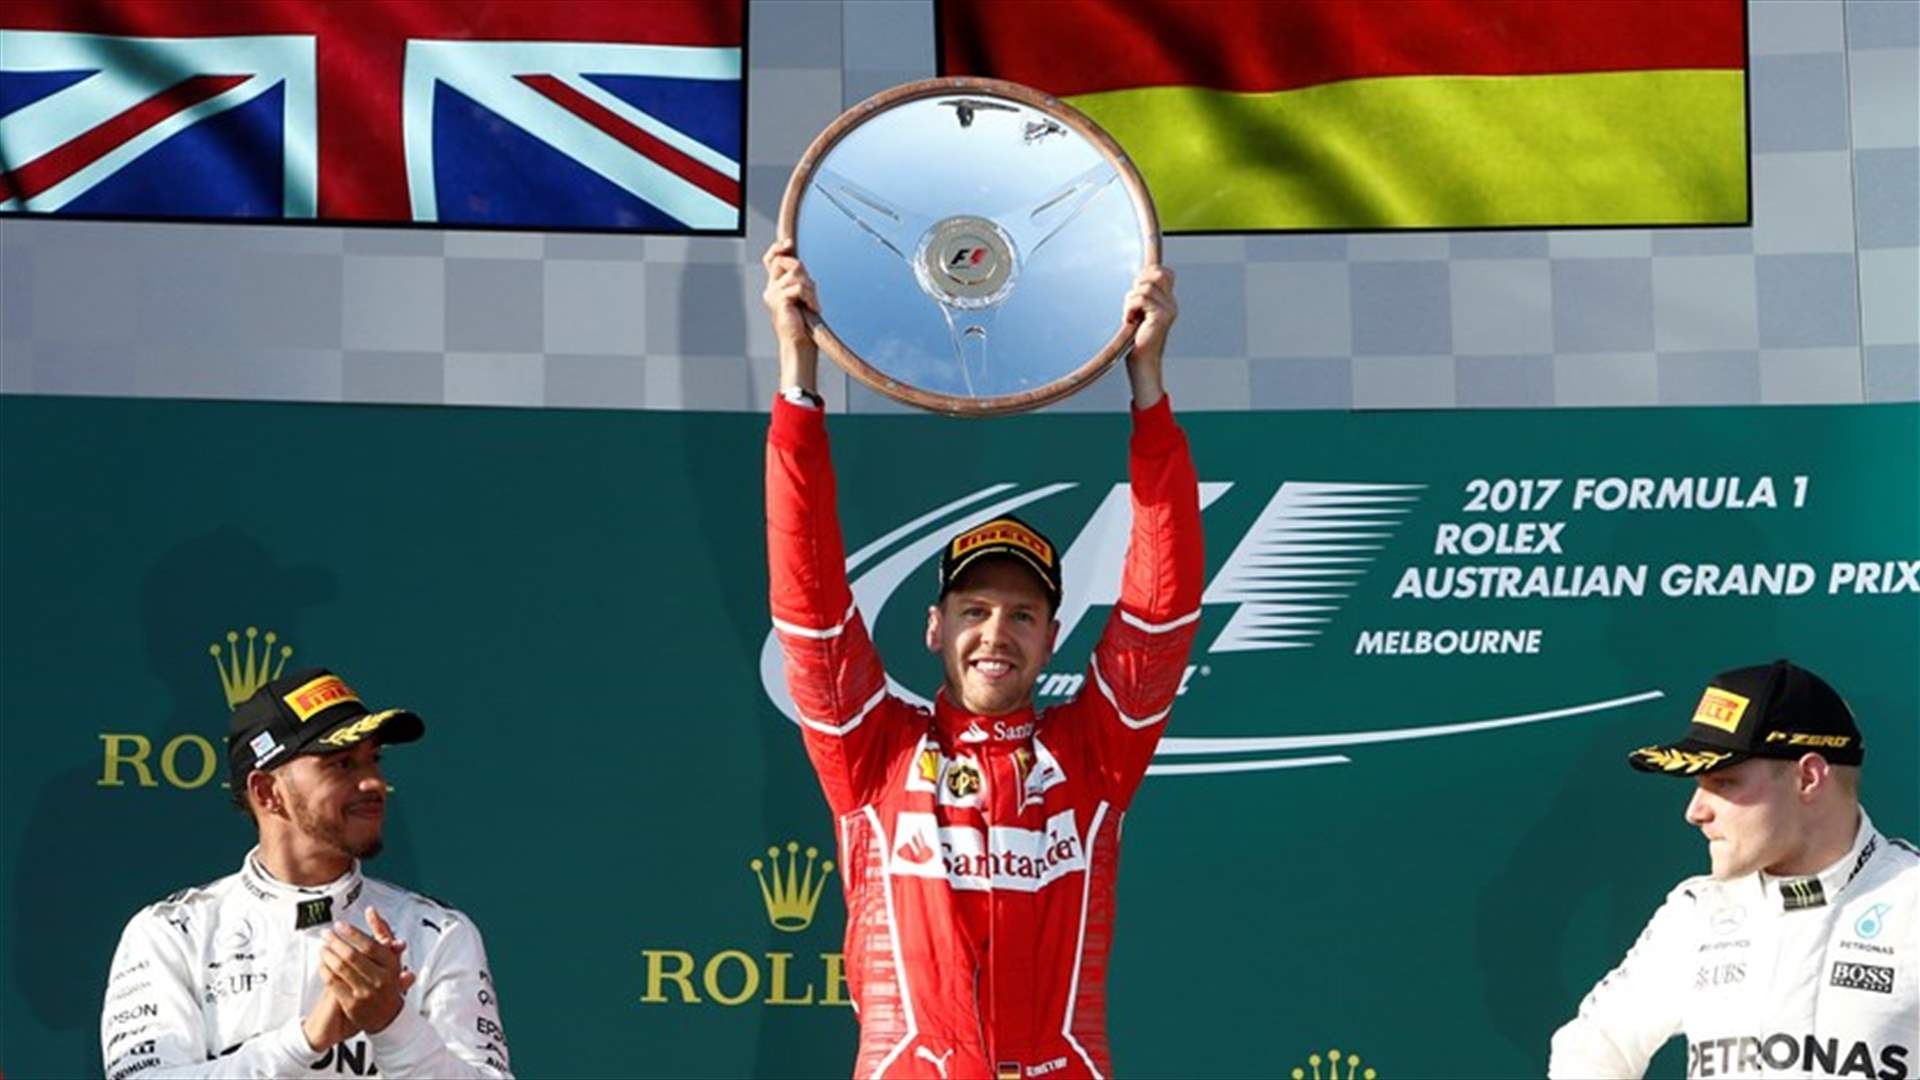 بالصور - سائق الفيراري سيباستيان فيتل يفوز بسباق جائزة استراليا الكبرى الافتتاحي